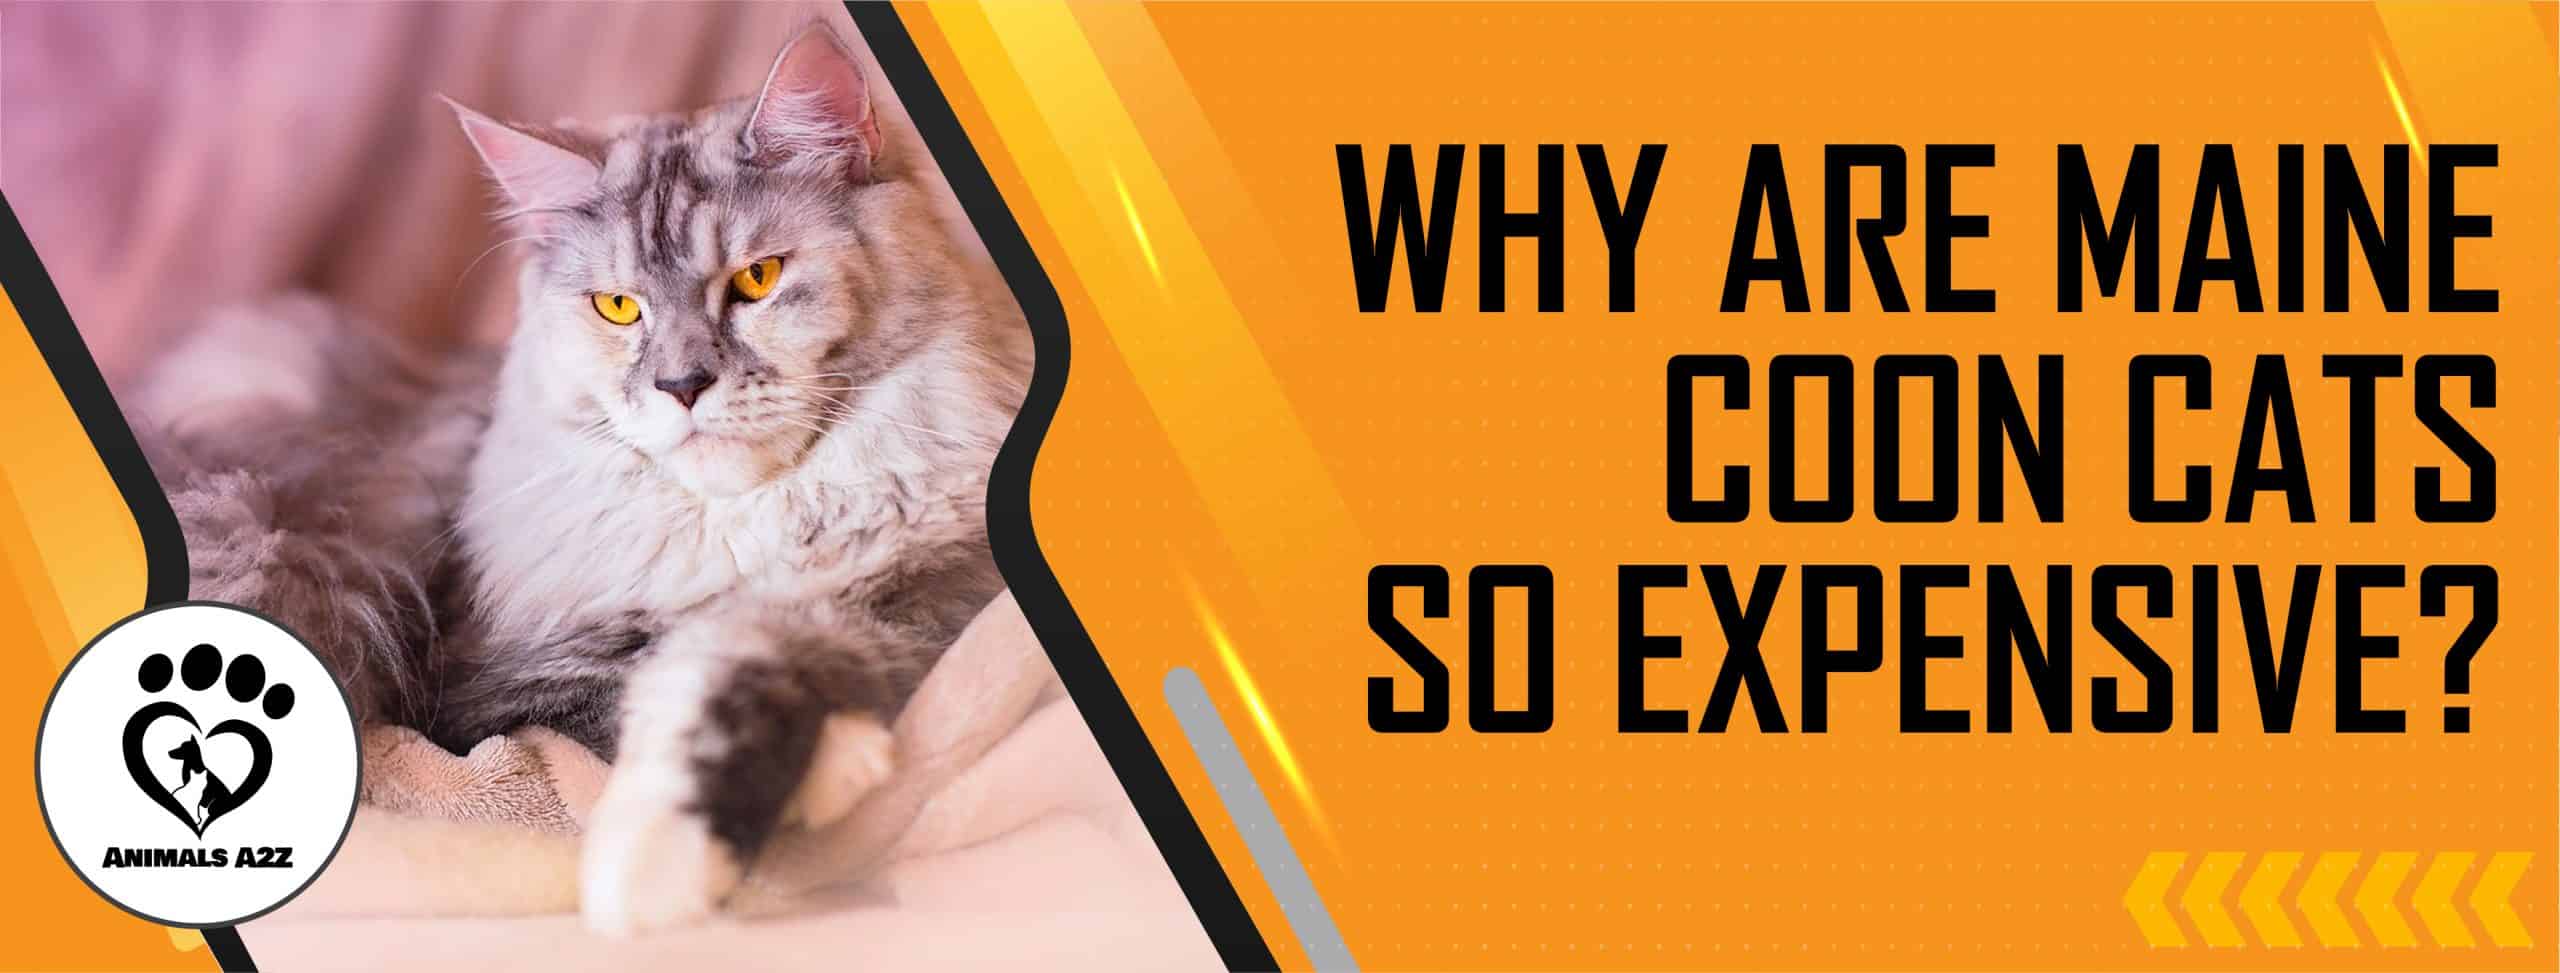 Warum sind Maine Coon Katzen so teuer?